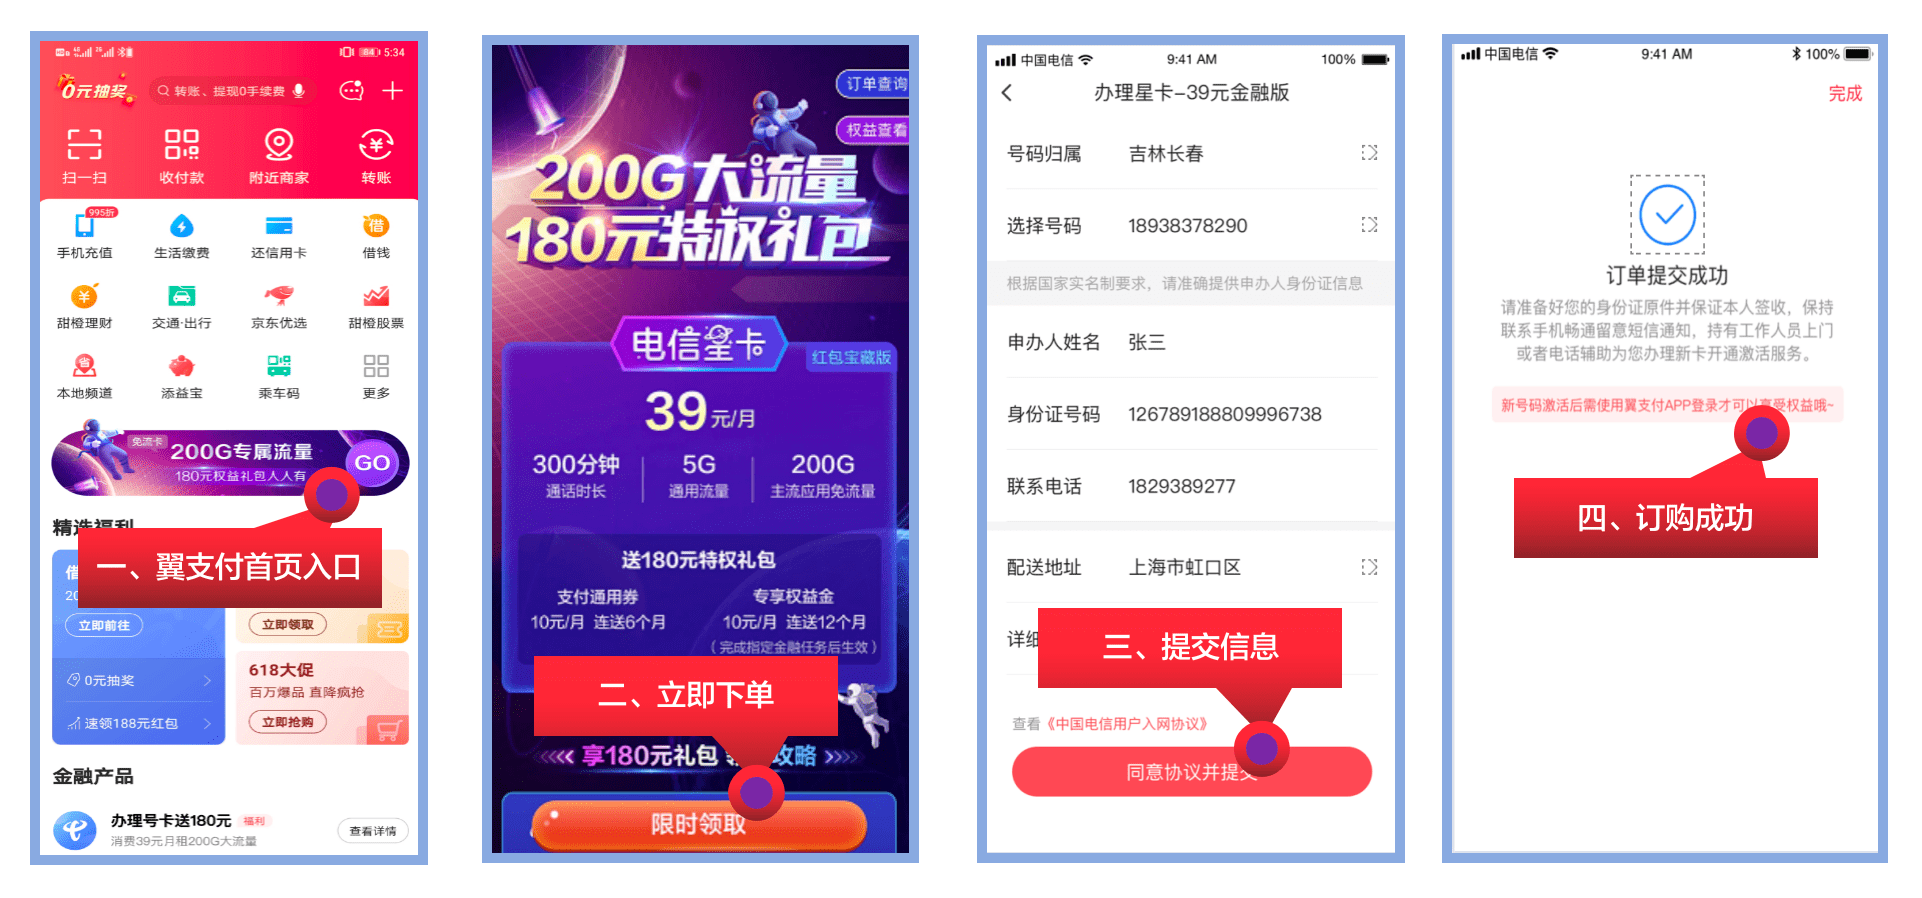 中国电信星卡红包宝藏版优惠来袭39元享200G流量+300分钟通话